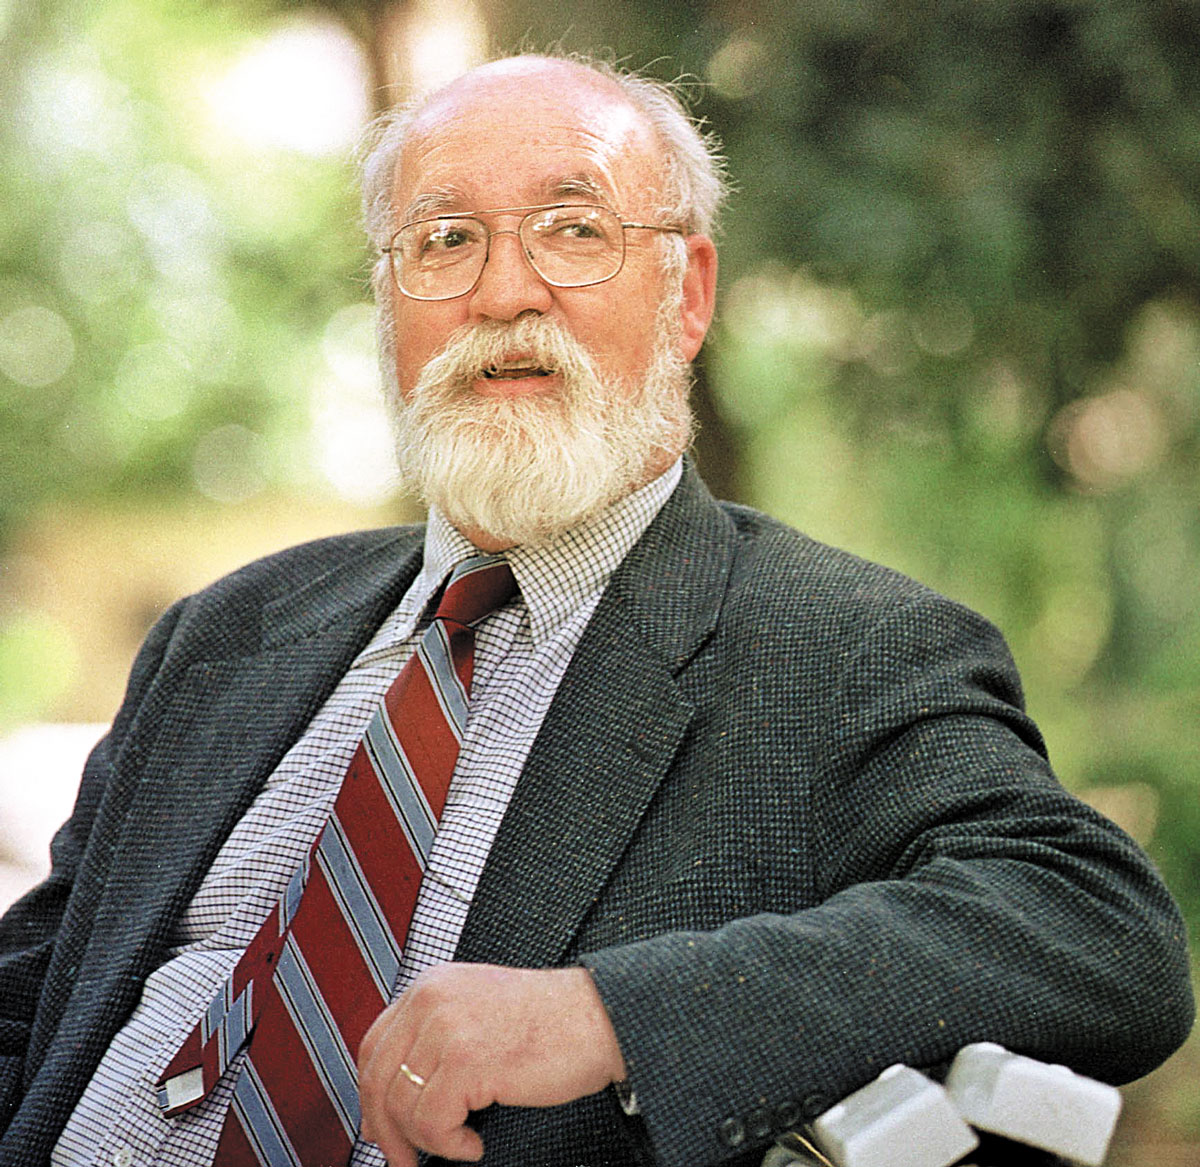 Daniel C. Dennet fotografiat al Jardí Botànic de la Universitat de València